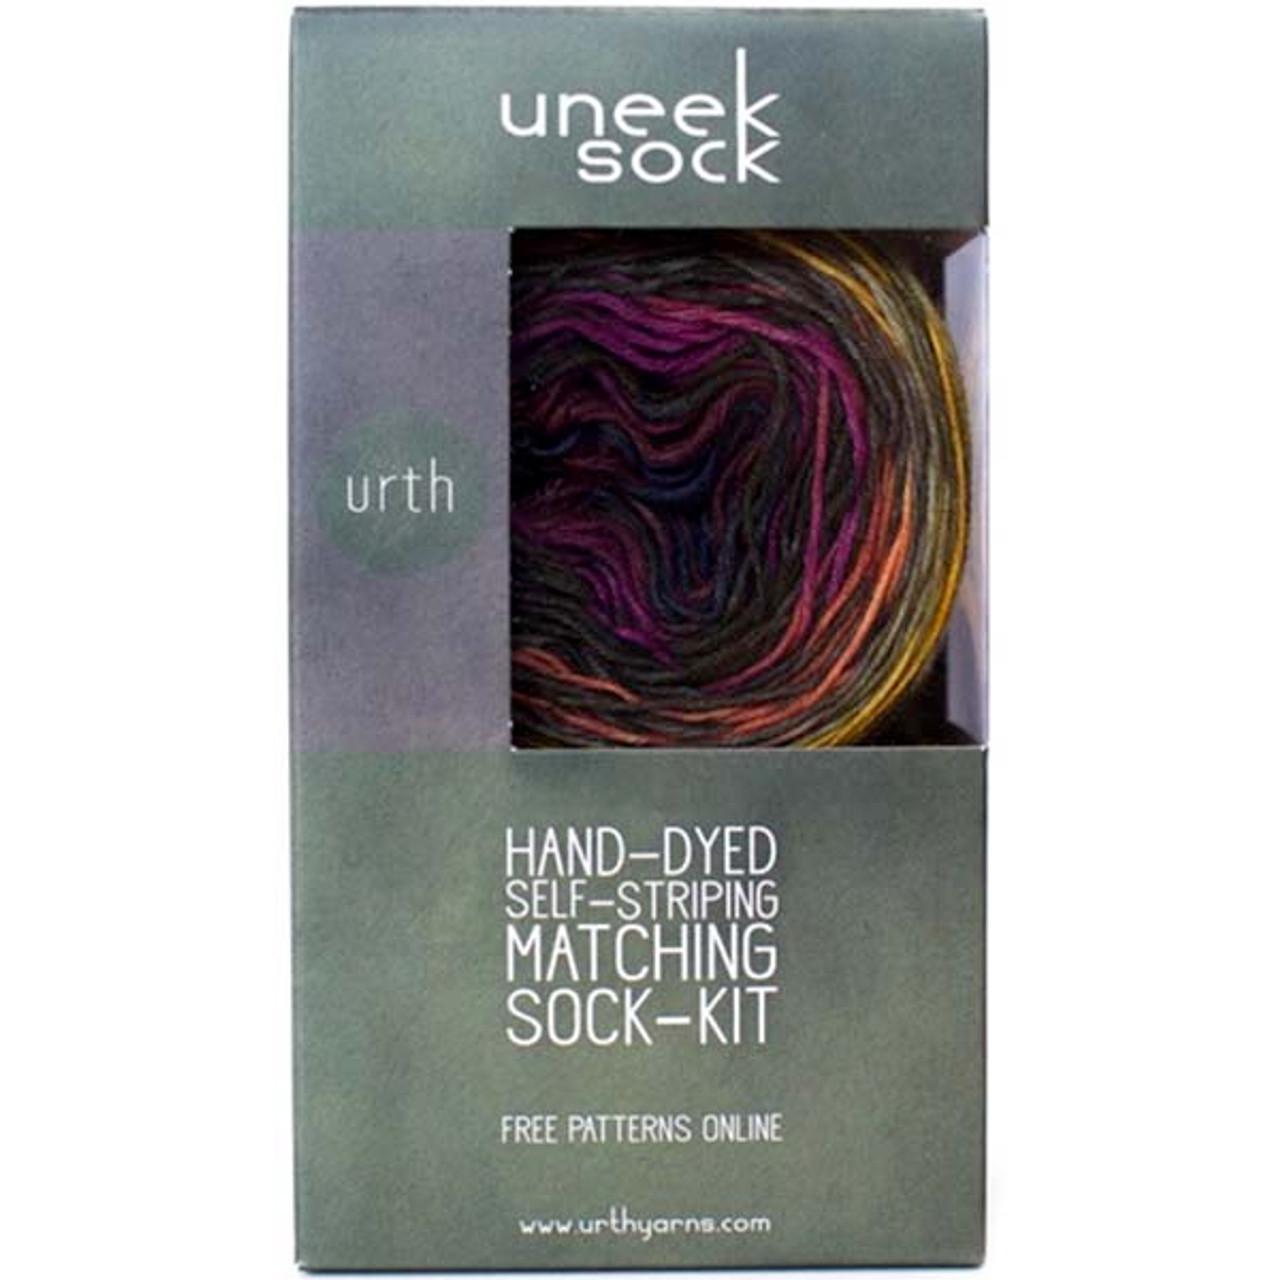 uneek sock kit